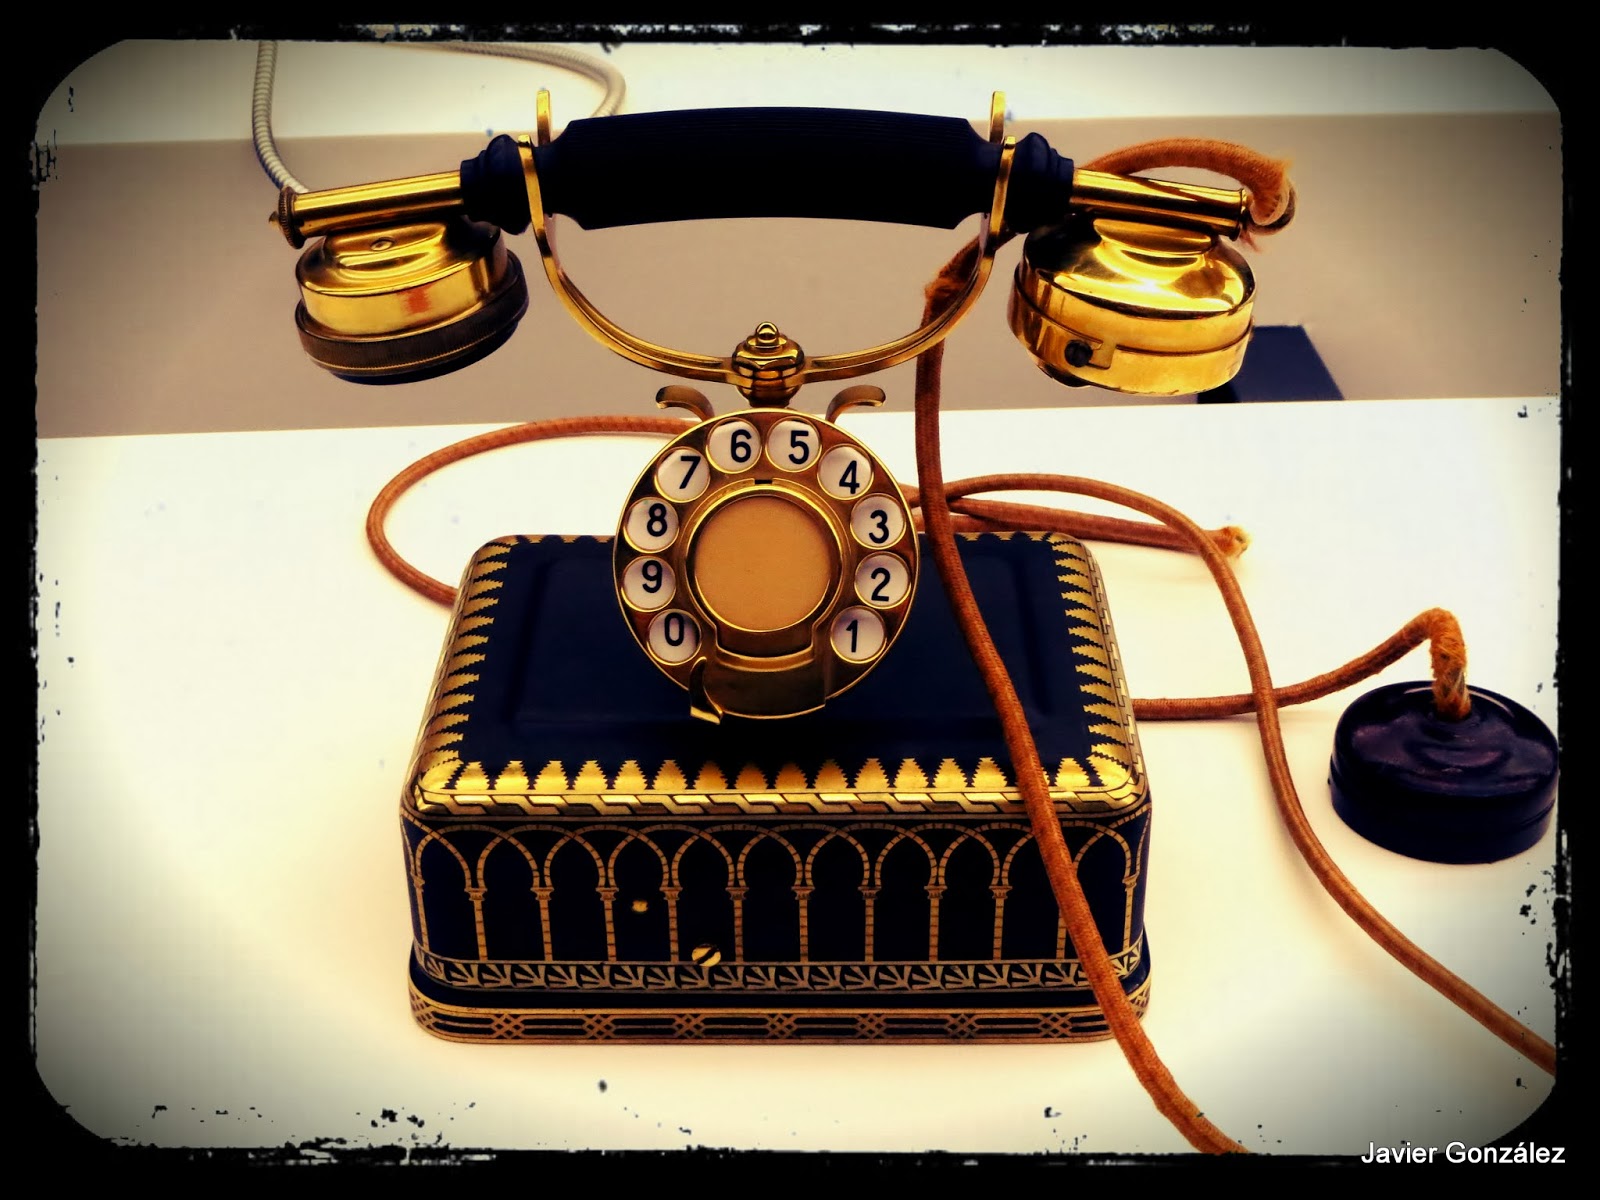 El teléfono pasas a ser un ornamento de decoración The phone becomes to be a decorative ornament